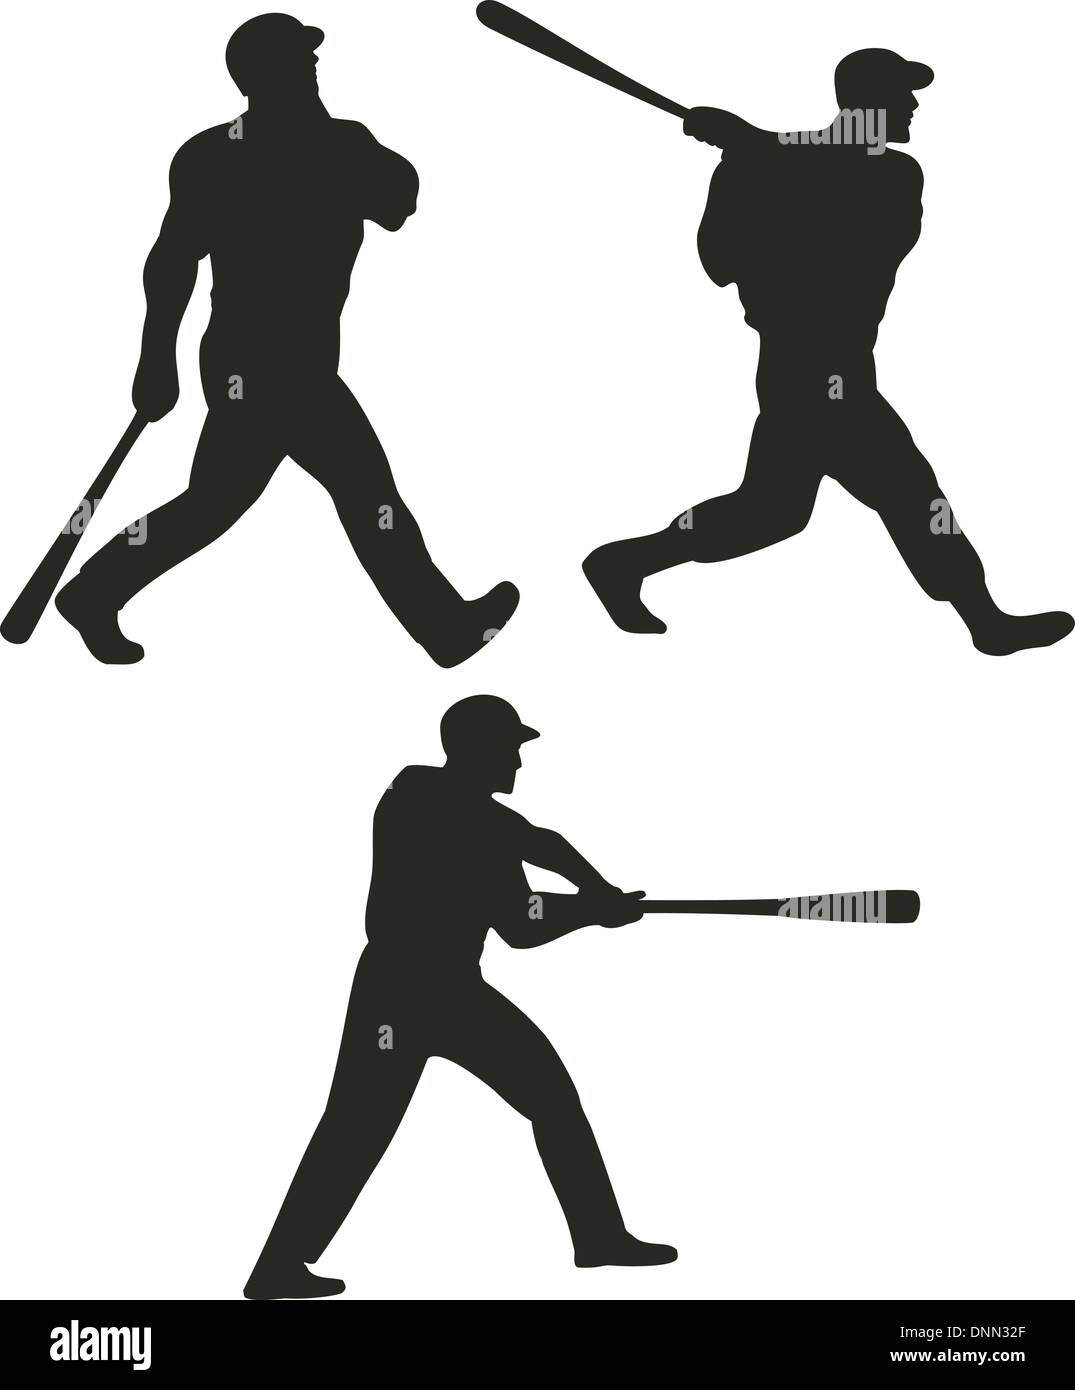 Abbildung von einem Baseballschläger im retro-Stil gemacht. Stock Vektor